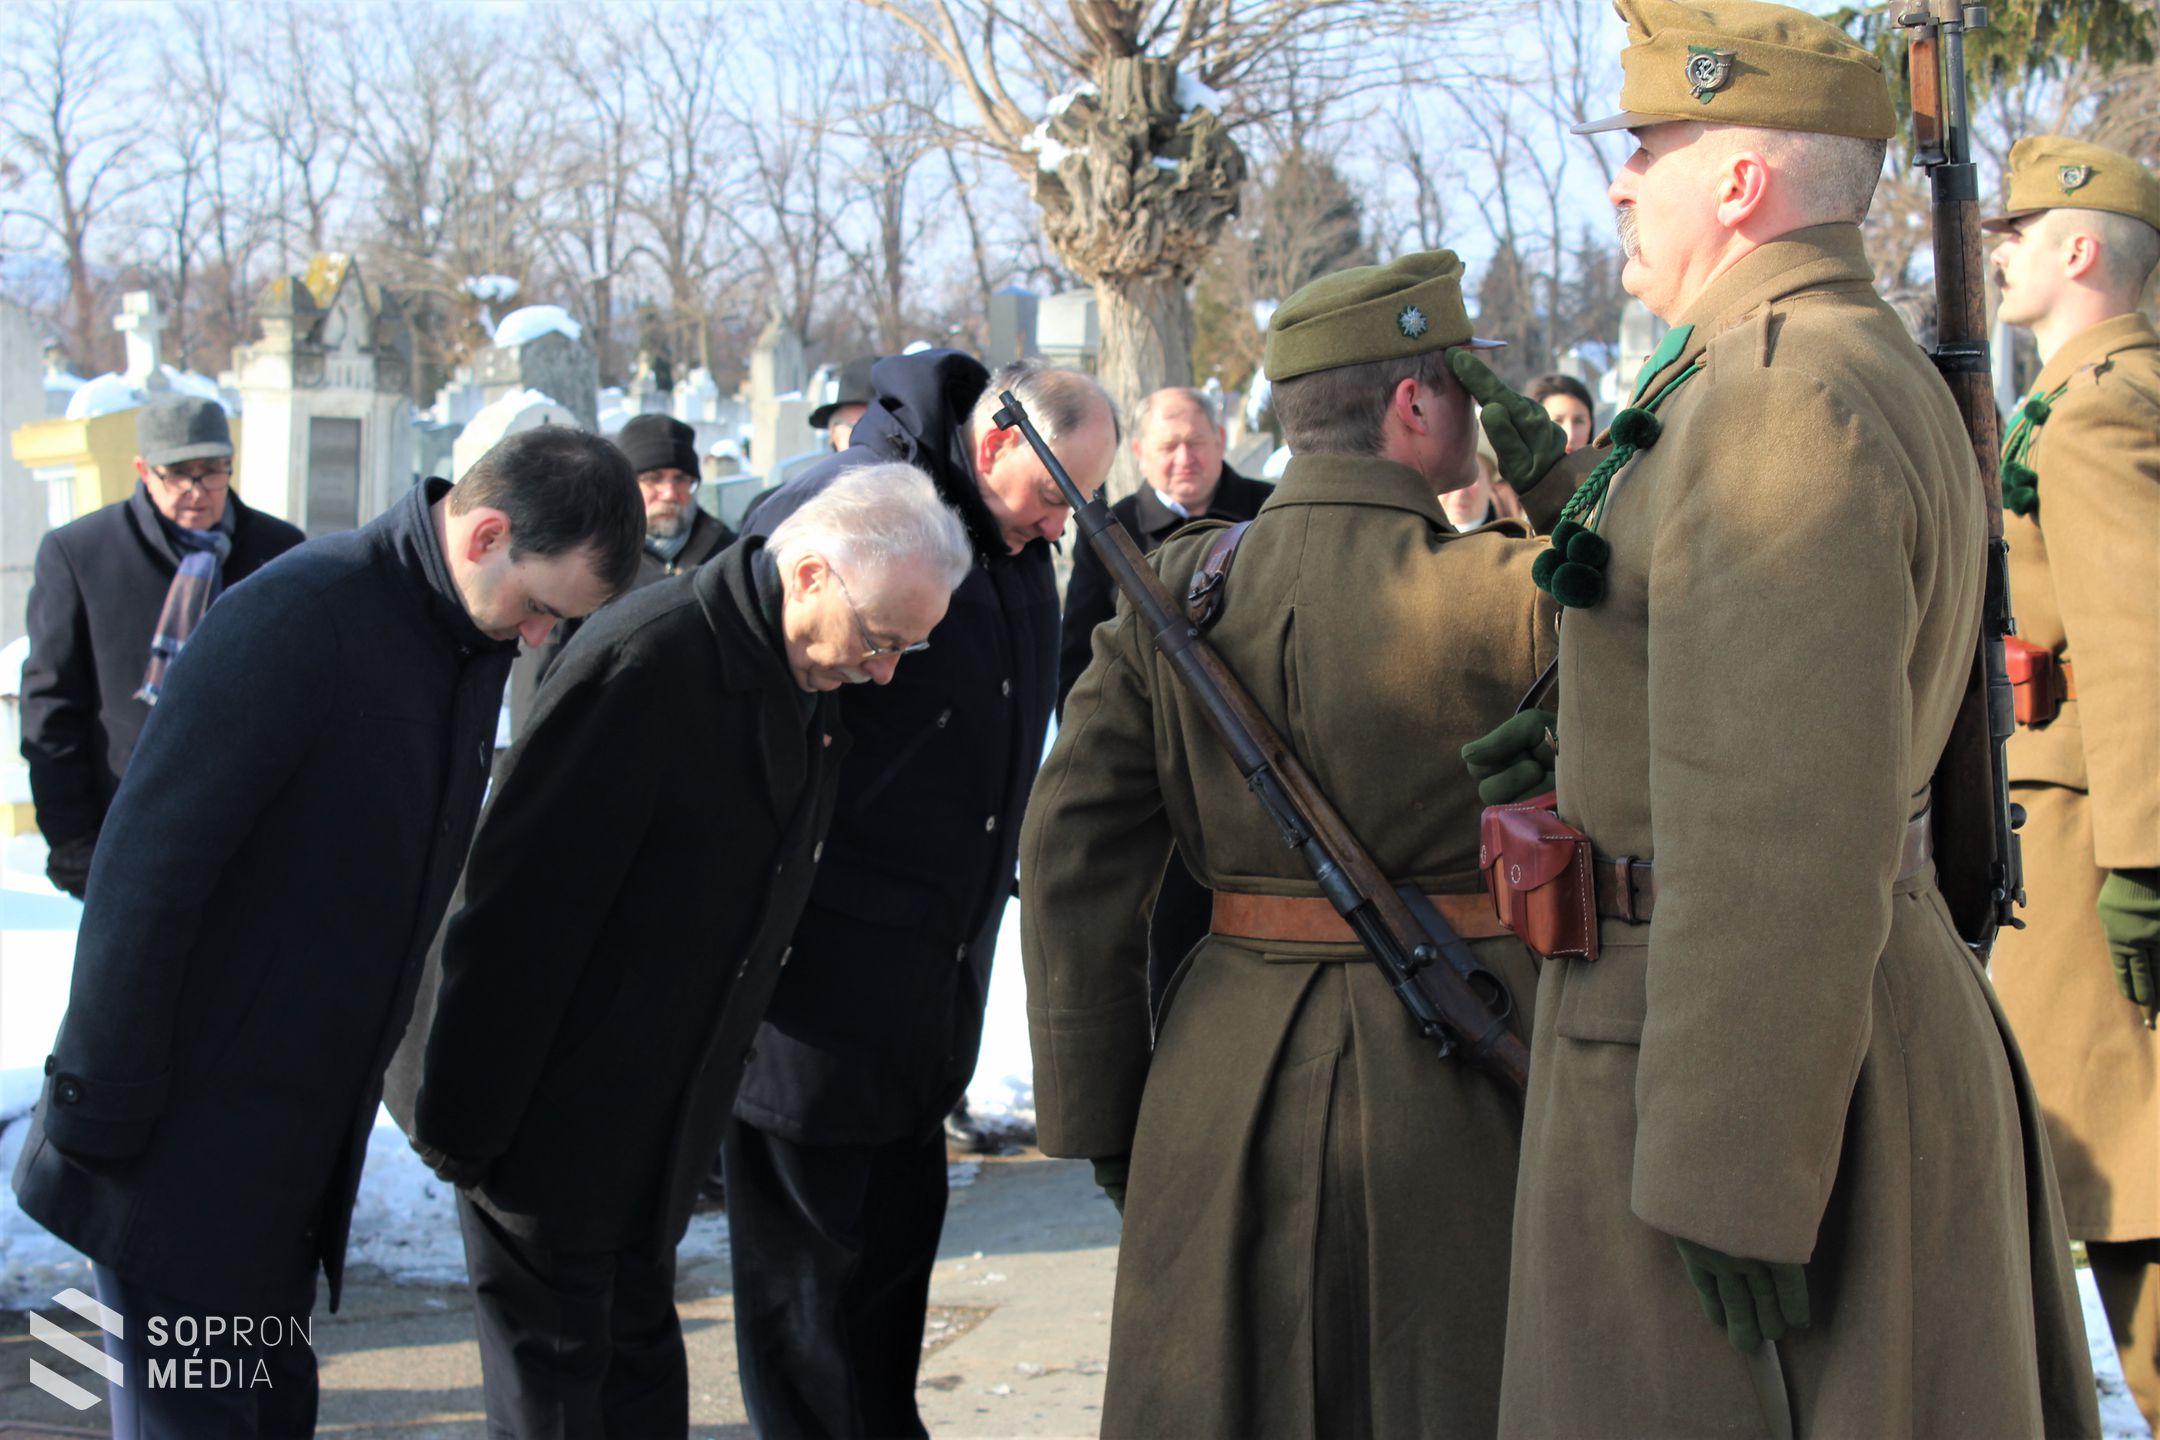 Soproni megemlékezések a Kommunizmus Áldozatainak Emléknapján 